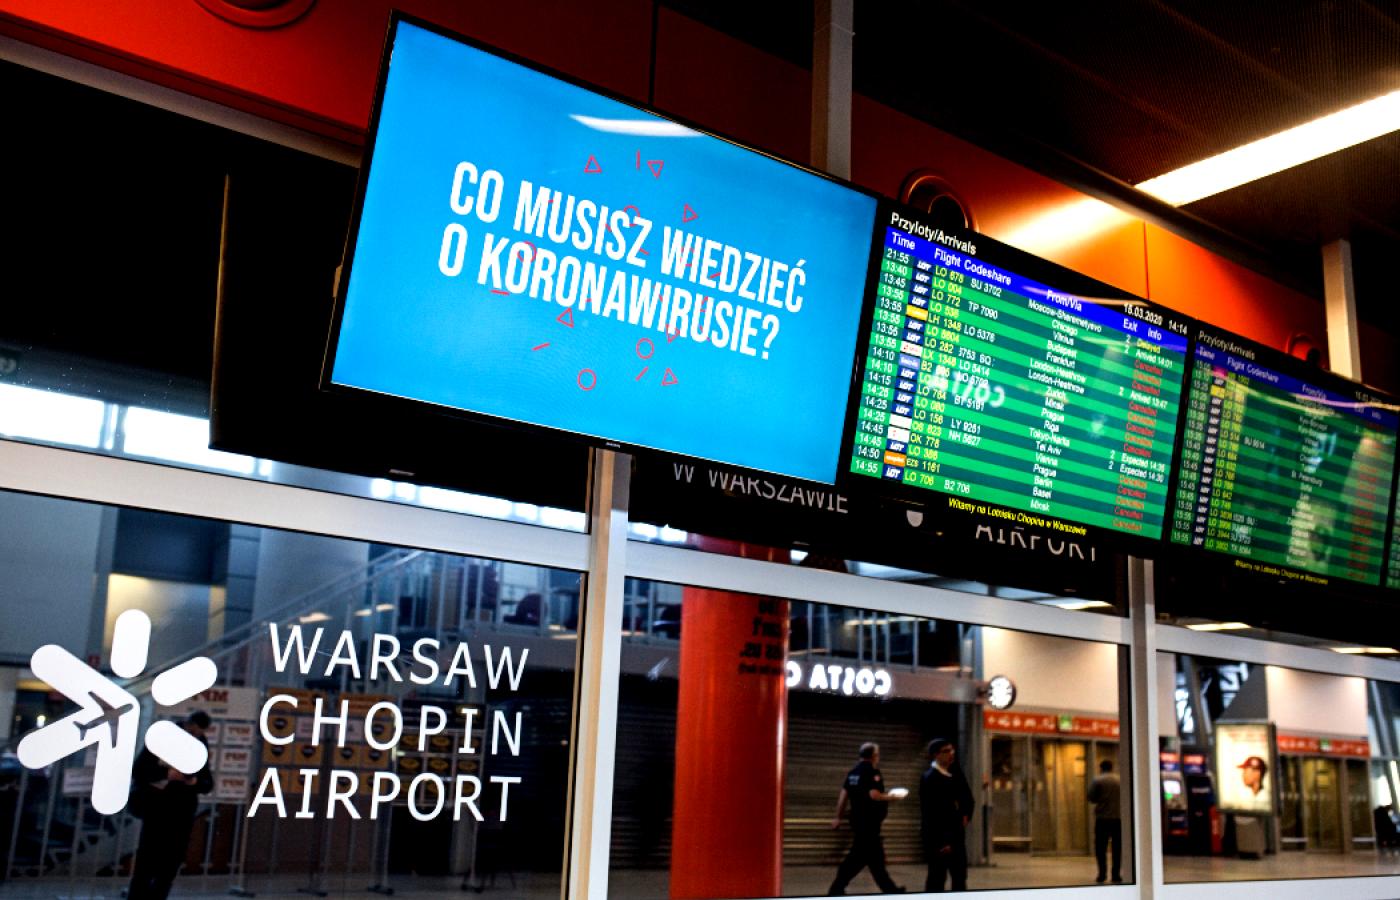 Odwołane rejsy na warszawskim lotnisku Chopina po wprowadzeniu zakazu lotów w związku z epidemią koronawirusa. 15 marca 2020 r.